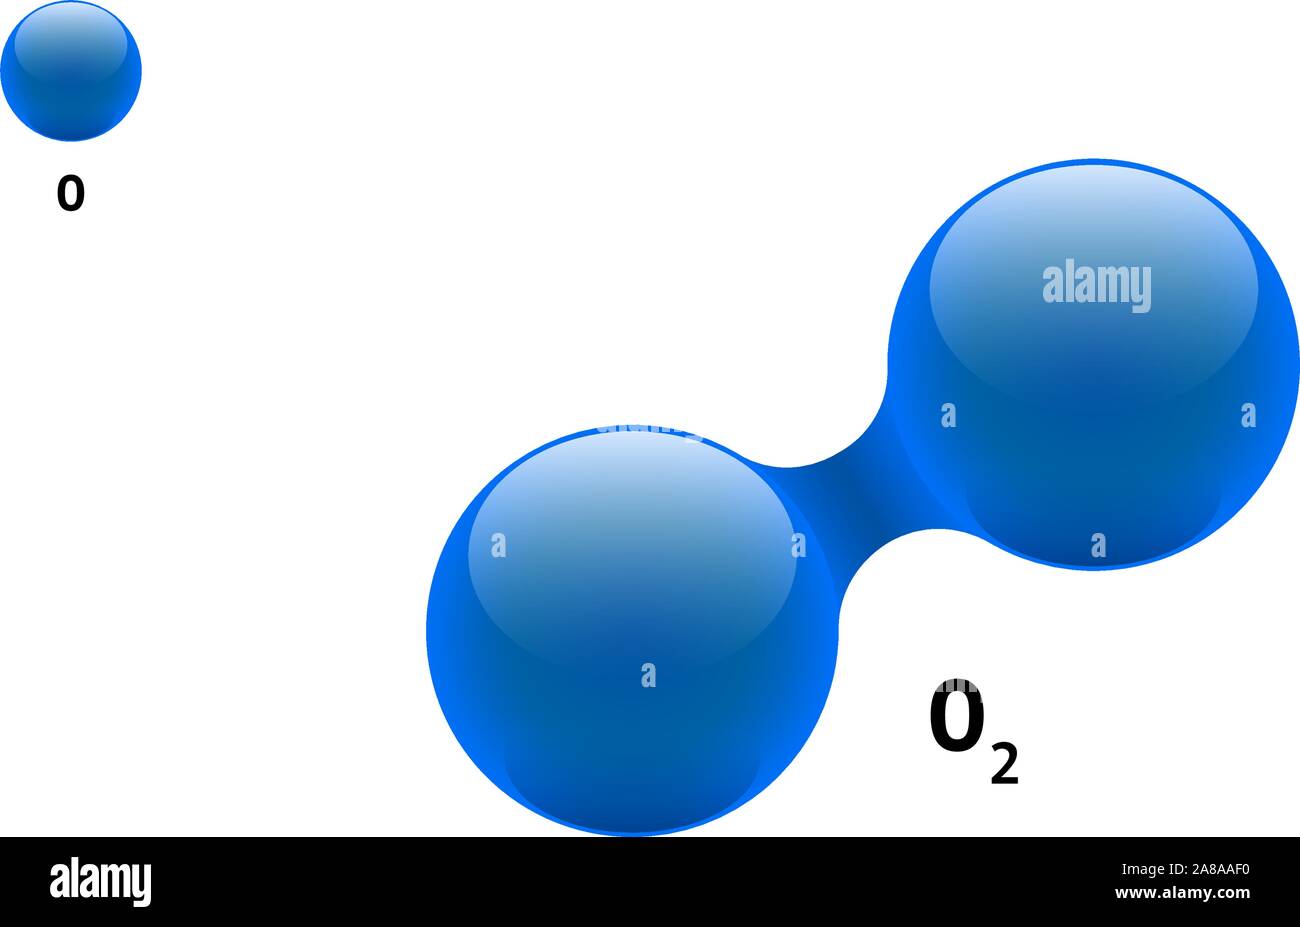 Chemie Modell zweiatomiges Molekül Sauerstoff O 2 Wissenschaftliche element Formel. Integrierte Partikel Natürliche anorganische 3d dioxygen Gas molekularen Struktur con Stock Vektor